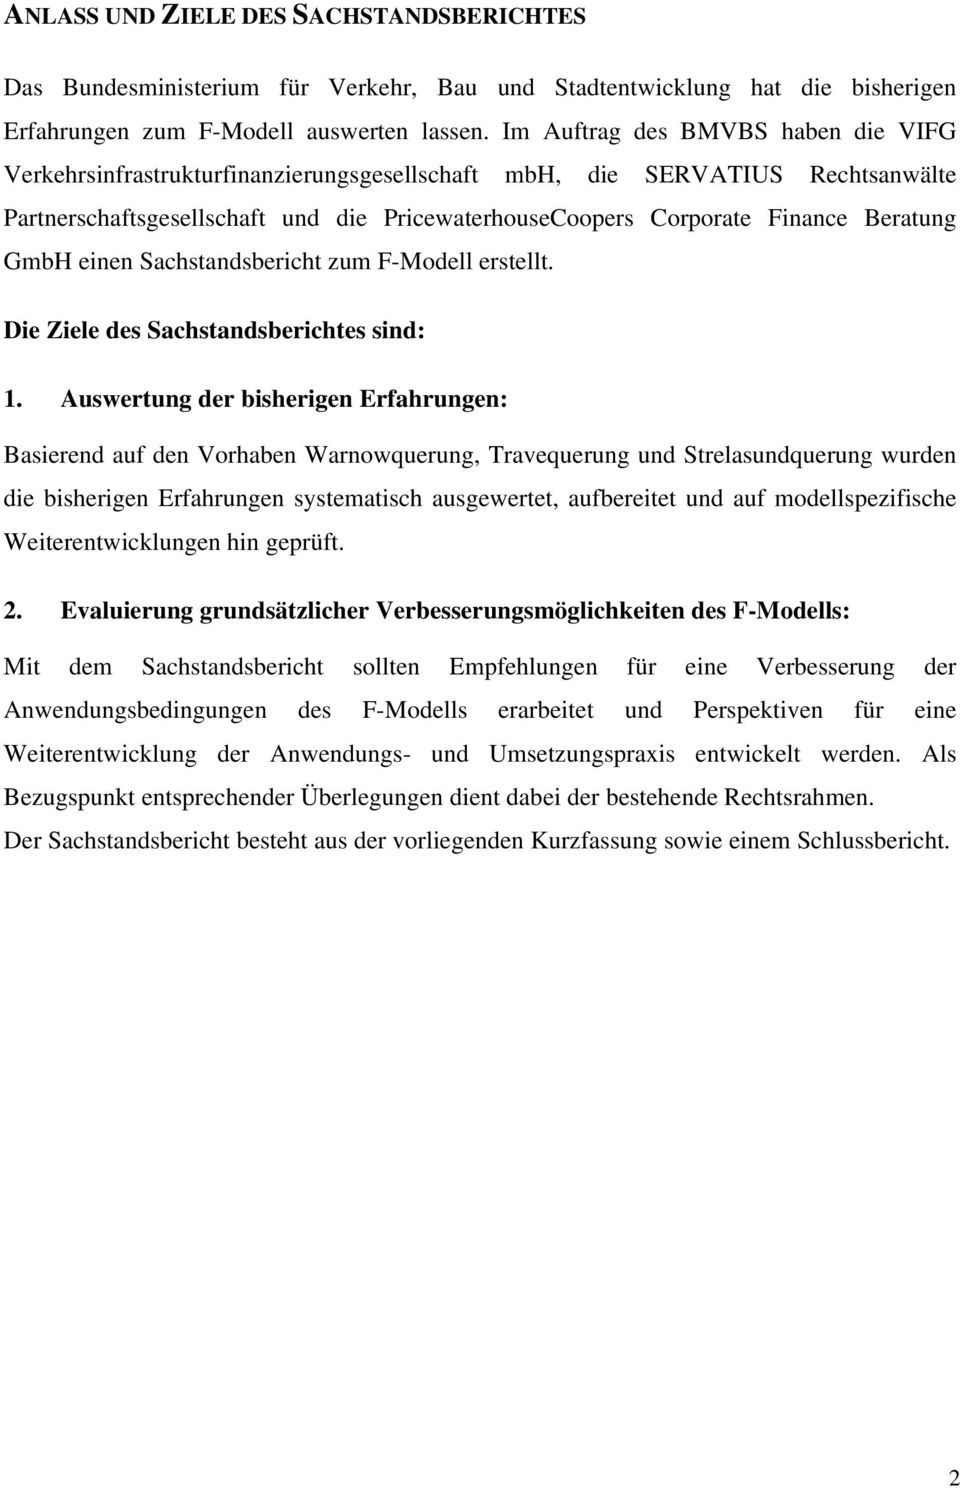 Beratung GmbH einen Sachstandsbericht zum F-Modell erstellt. Die Ziele des Sachstandsberichtes sind: 1.